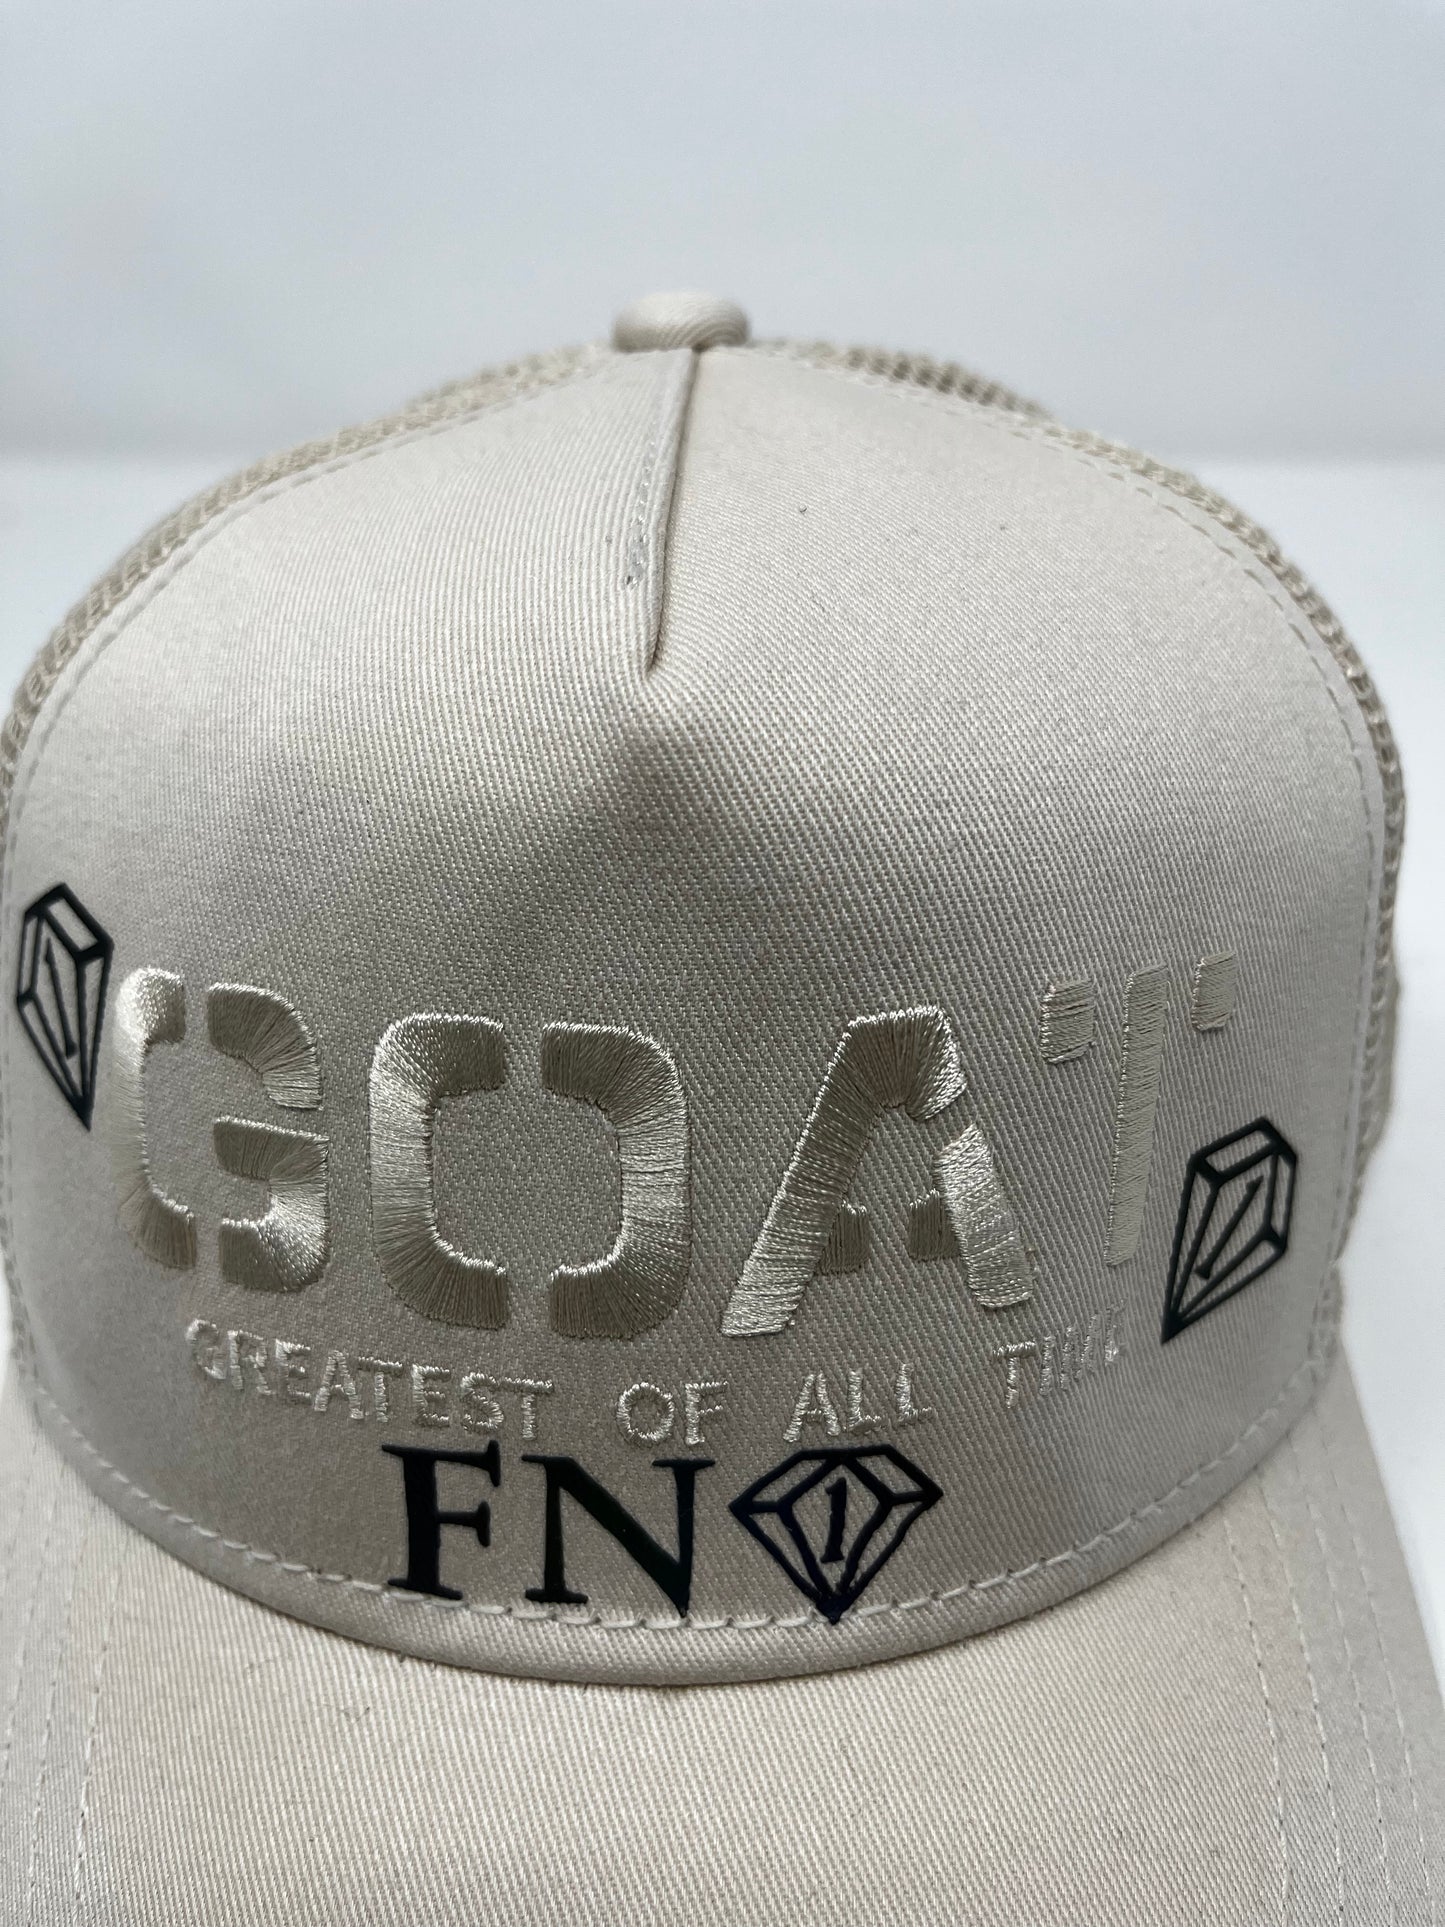 G.O.A.T. Trucker hat